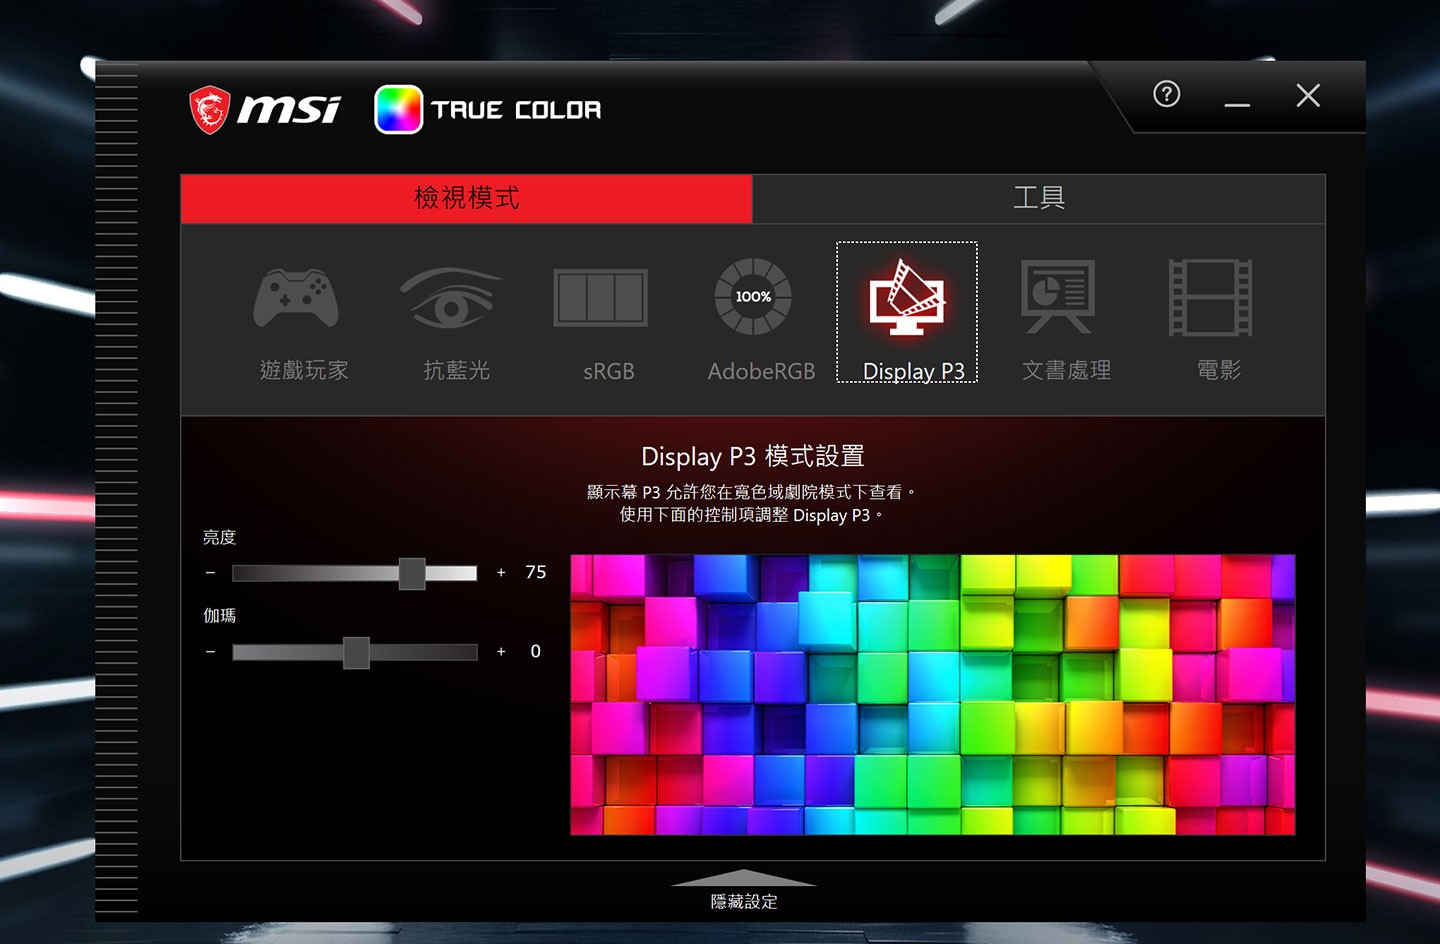 內建的 MSI True Color 工具可選擇不同類型的顯示模式，包括遊戲、電影、文書處理…不同用途場景，也有偏向專應用的 Adobe RGB、Display P3…可供選擇。